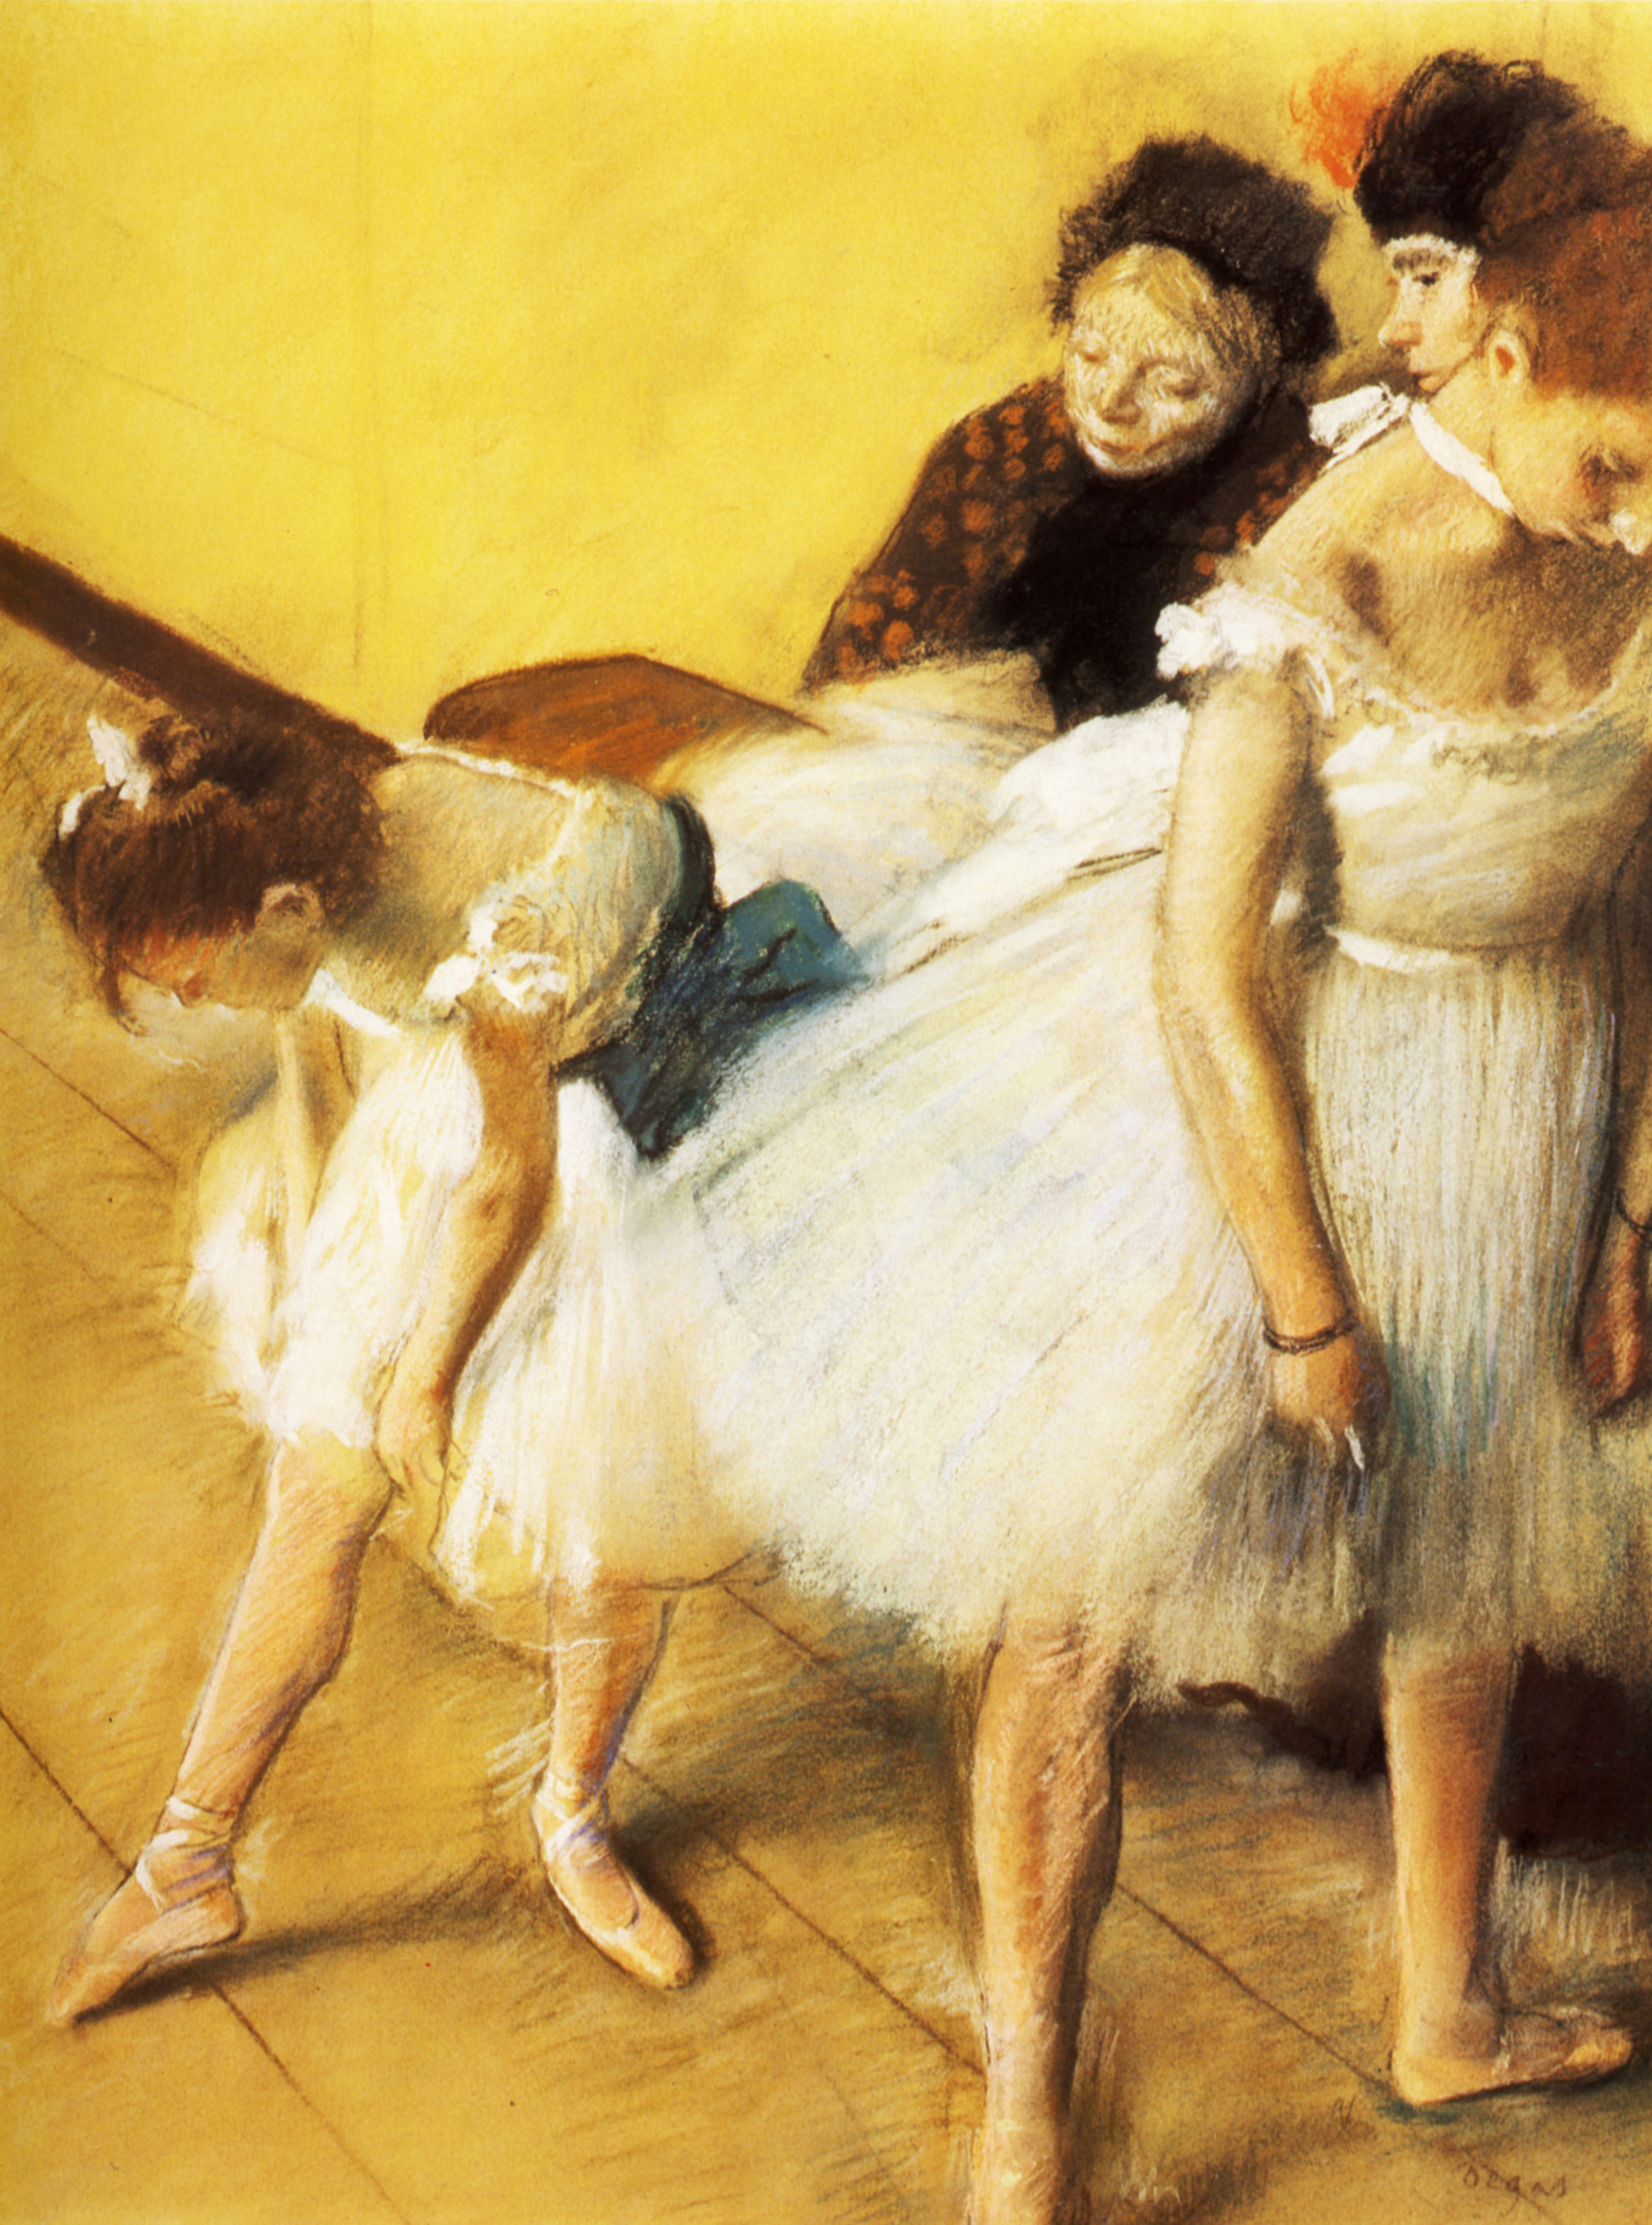 舞蹈考试 by 埃德加 德加 - 1880 - 63.4 x 48.2 cm 丹佛艺术博物馆